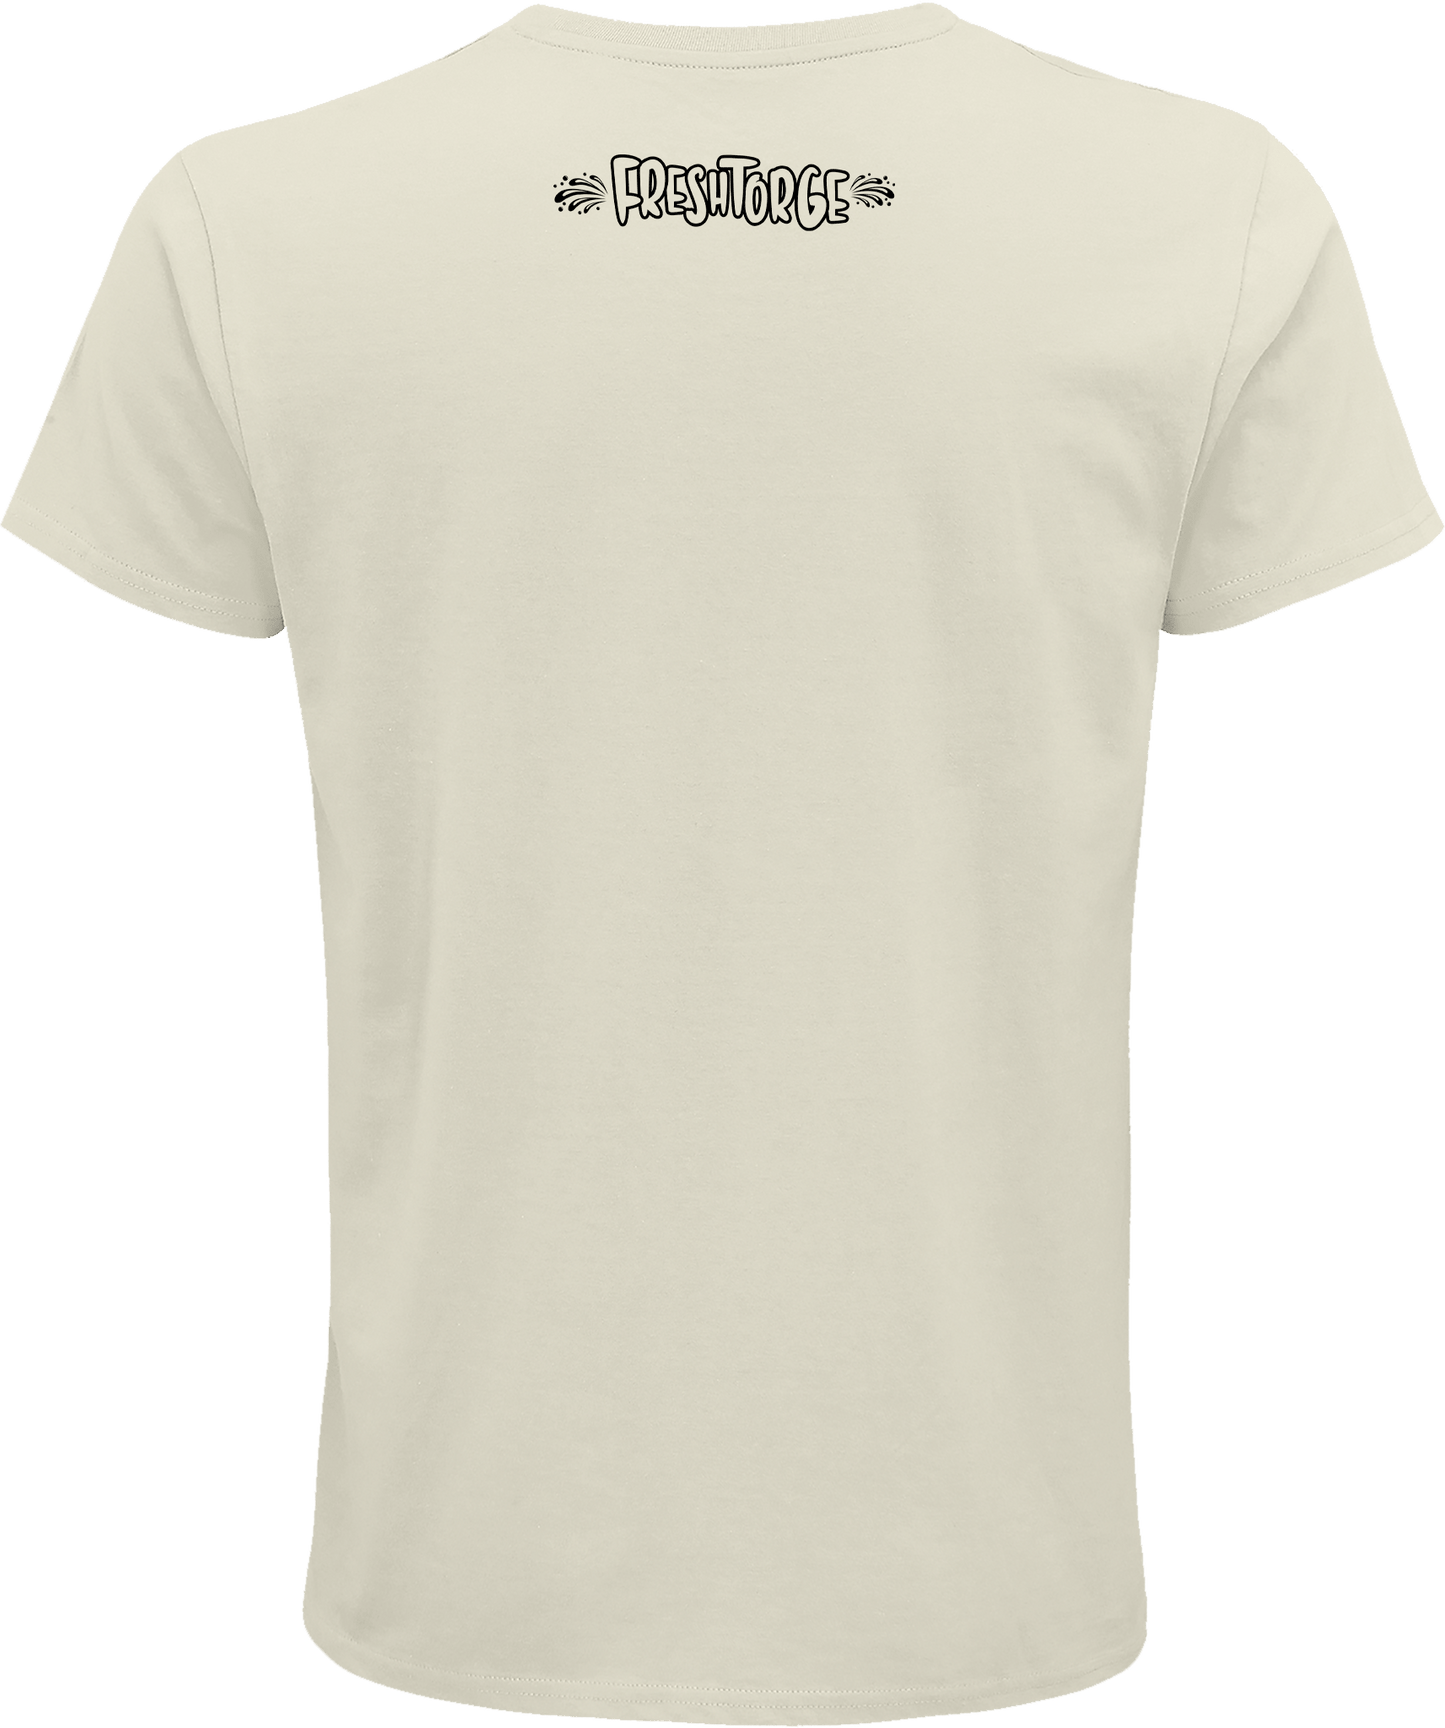 T-Shirt "Mook dat!" Sand - FRESHTORGE SHOP